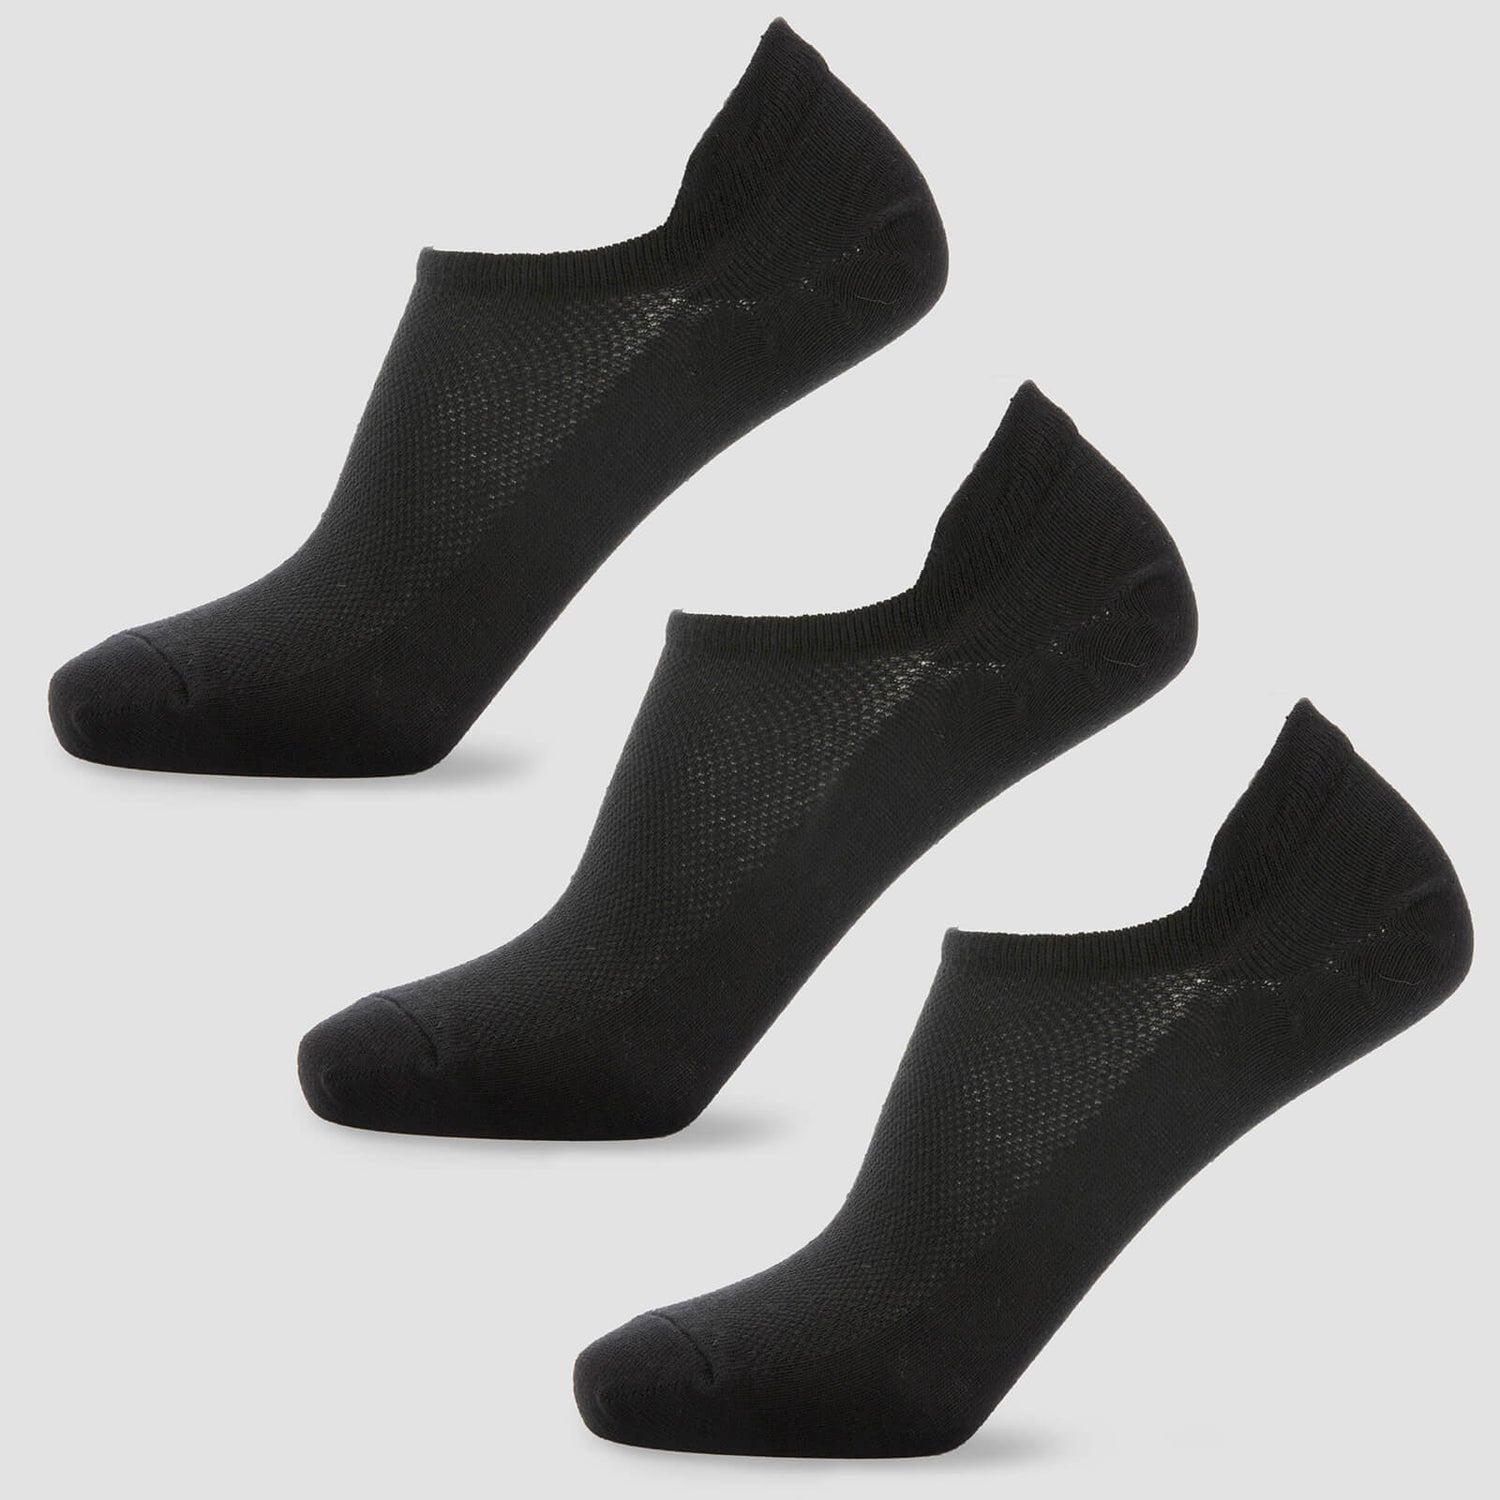 Women's Ankle Socks - Black (3 Pack)